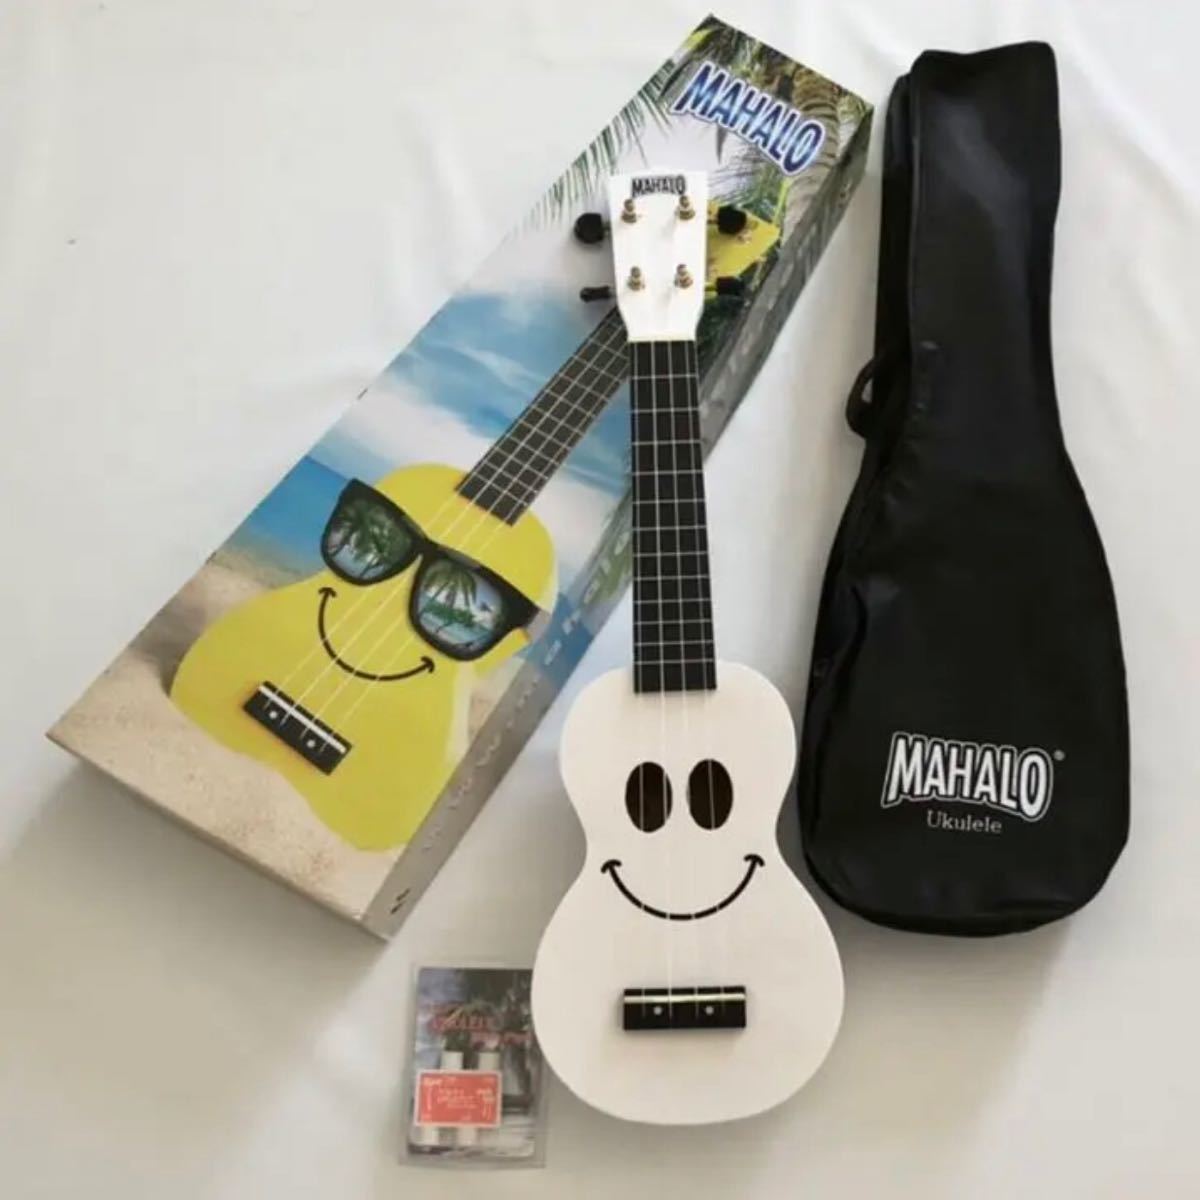  free shipping * new goods unused *MAHALO Smile ukulele white * pitch pipe present 